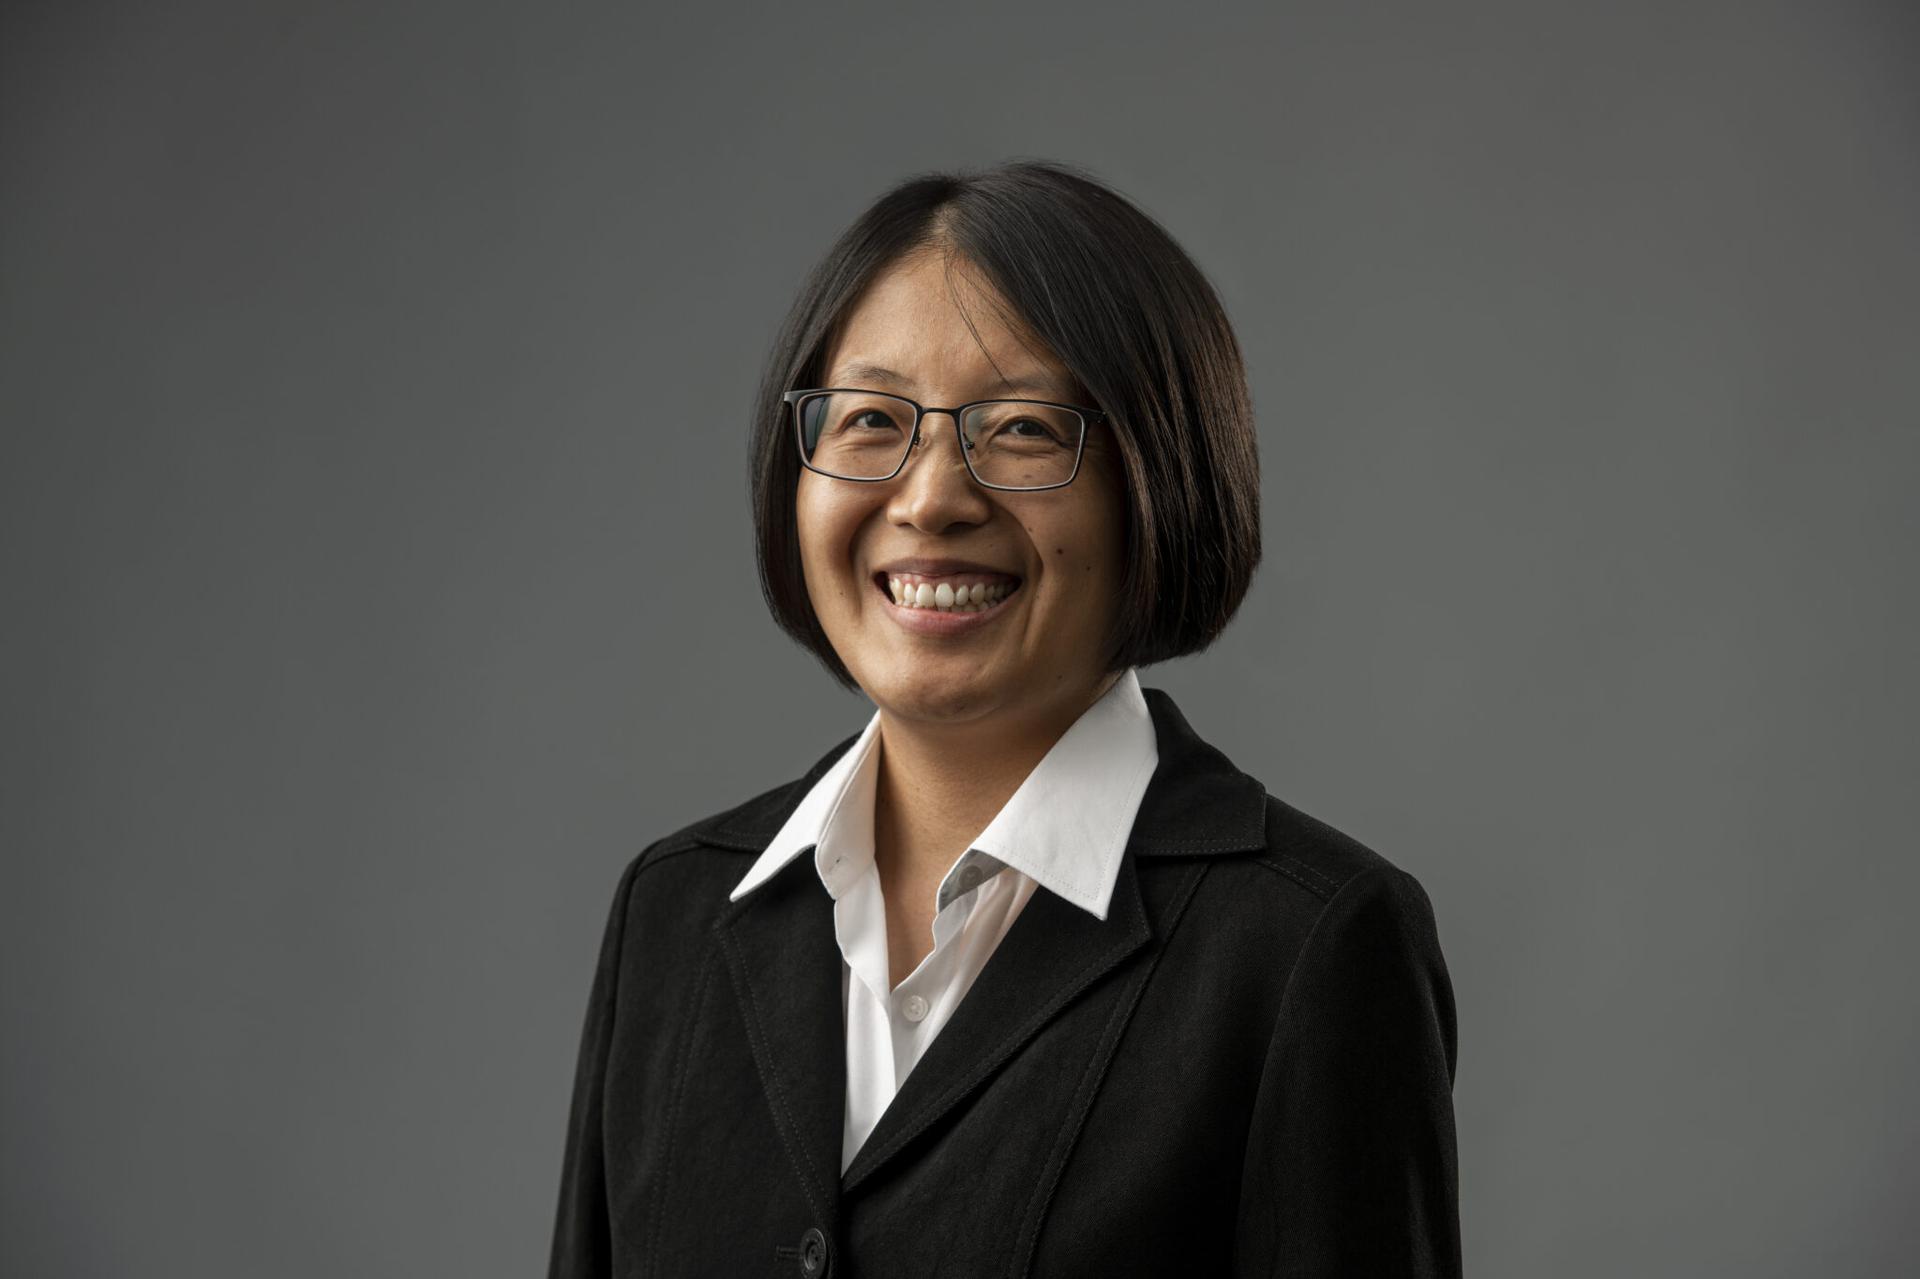 Dr. Jinling Liu